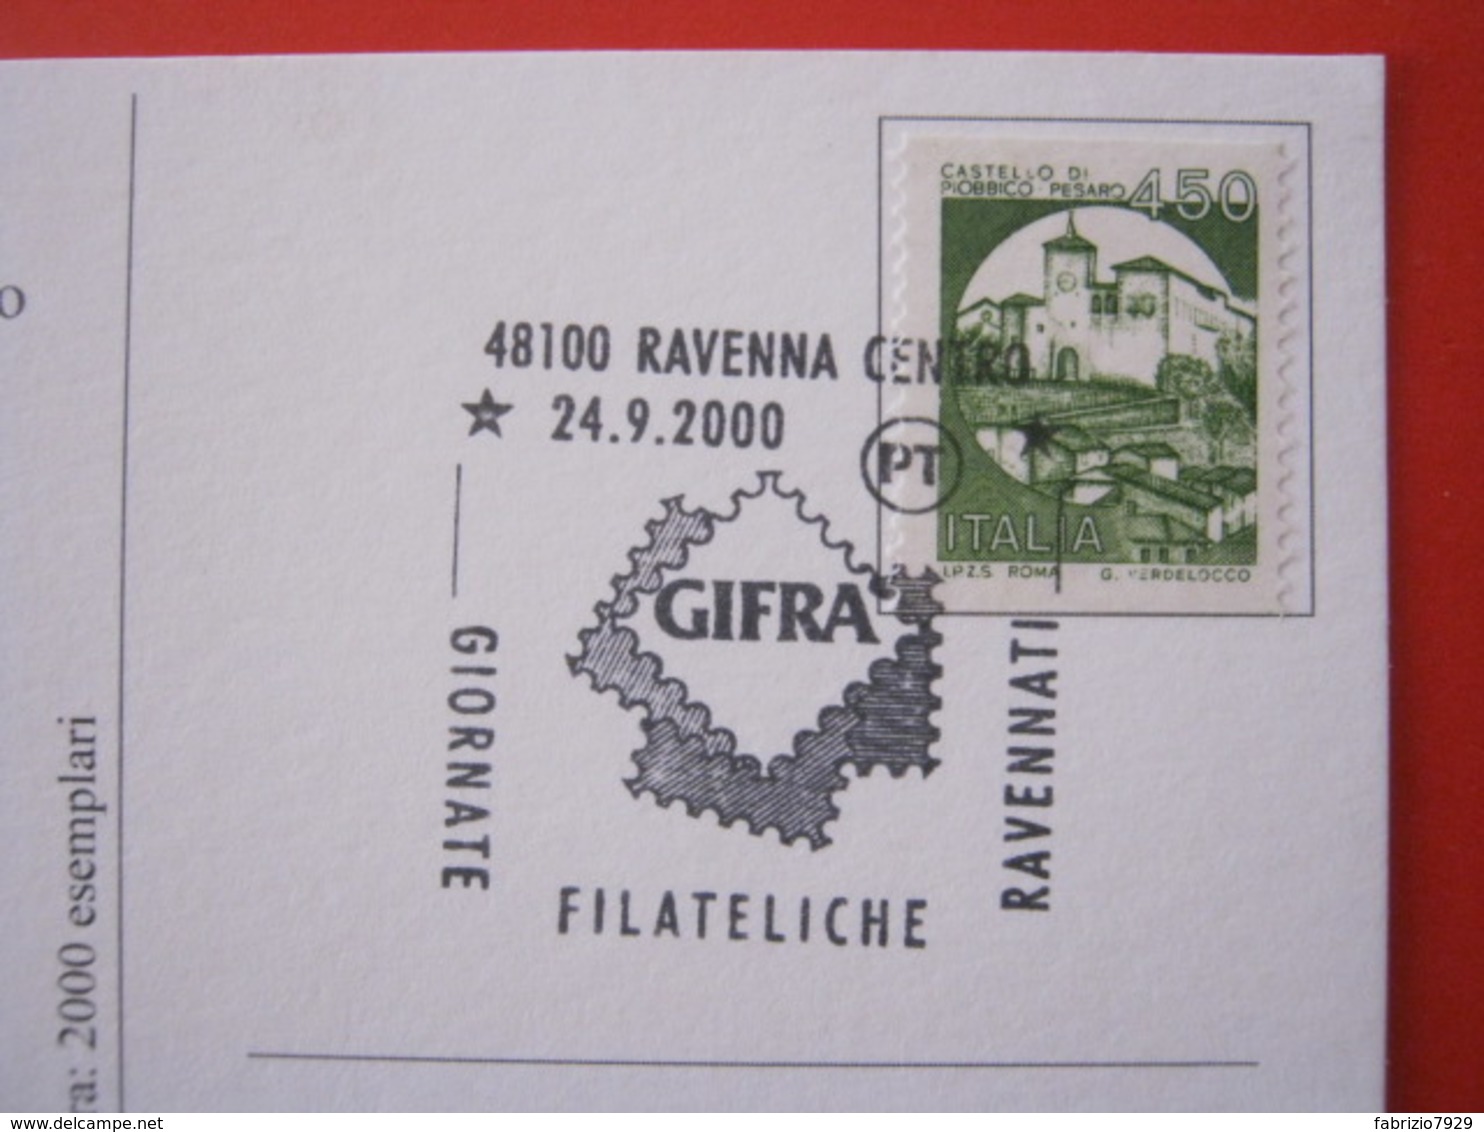 A.10 ITALIA ANNULLO - 2000 RAVENNA GIORNATE FILATELICHE GIFRA DANTE ALIGHIERI FRANCOBOLLO EXPO CARD BASILICA - Esposizioni Filateliche